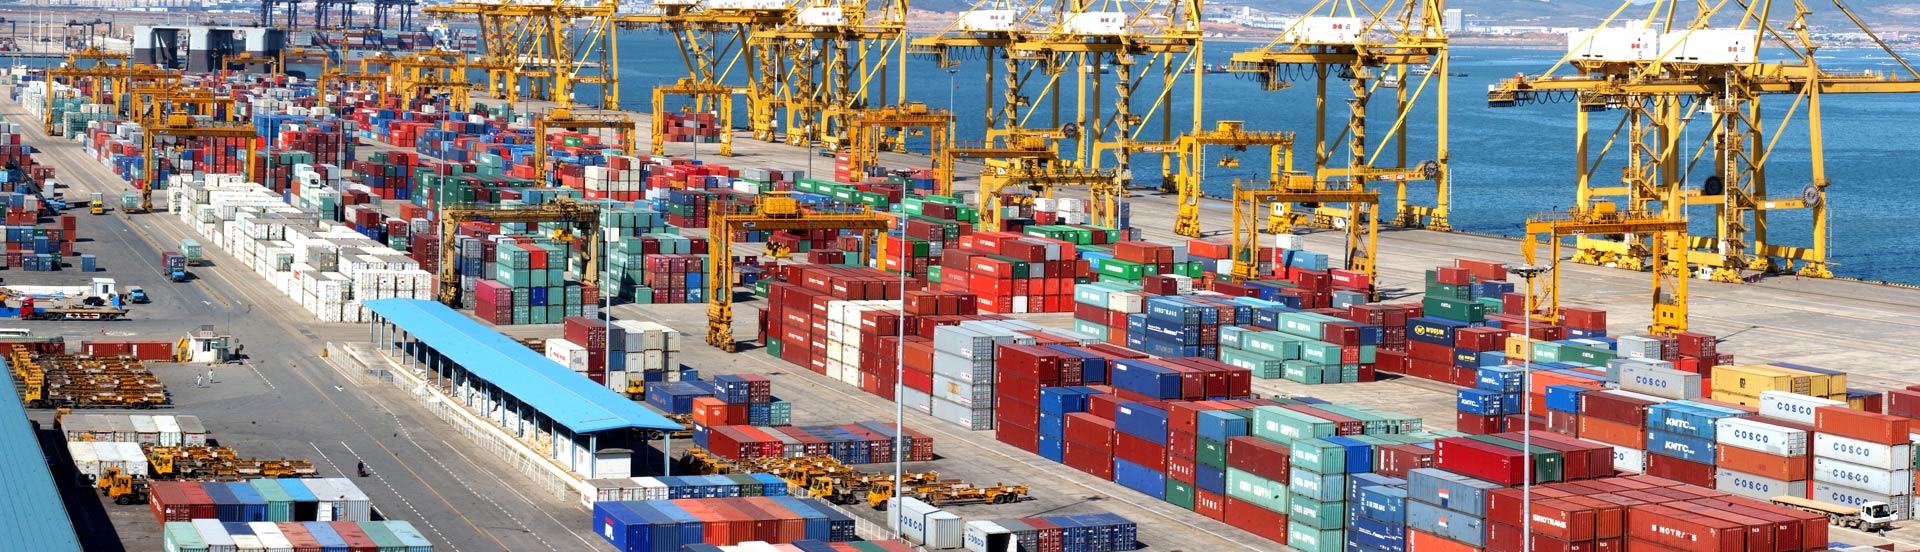 天津港到Haldia, India 霍尔迪亚,印度
海运费集装箱海运费